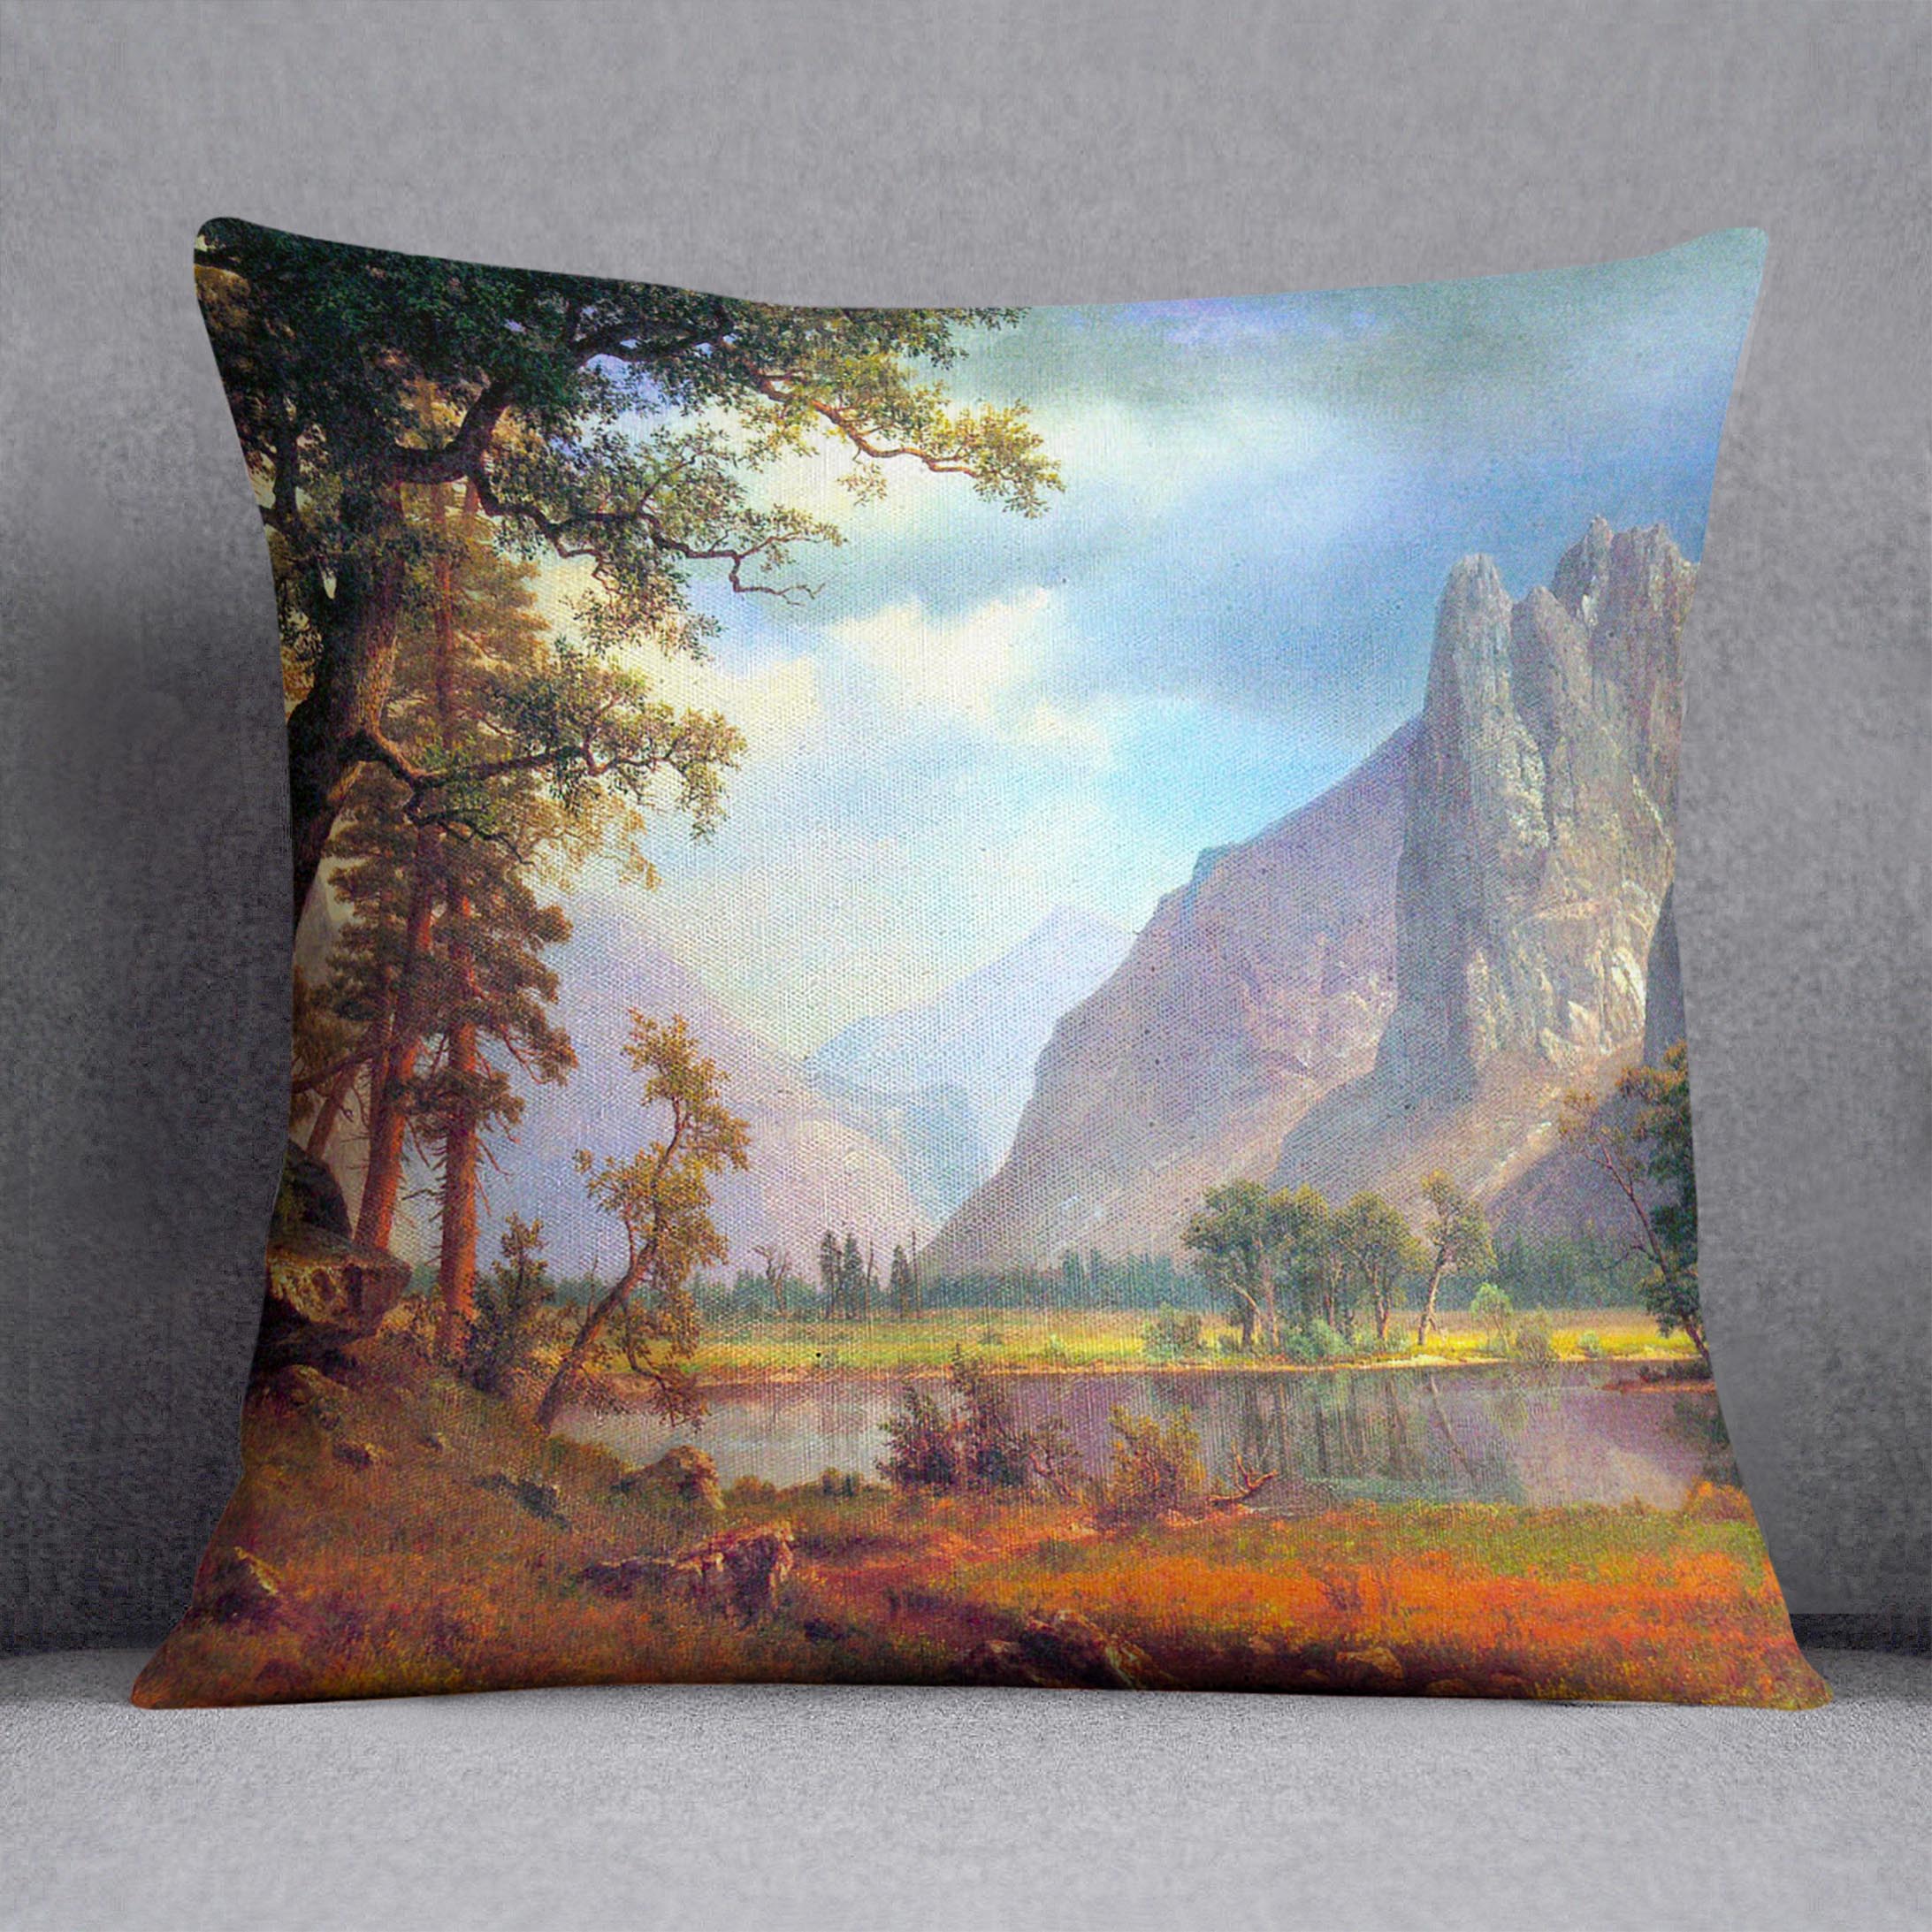 Yosemite Valley 2 by Bierstadt Cushion - Canvas Art Rocks - 1